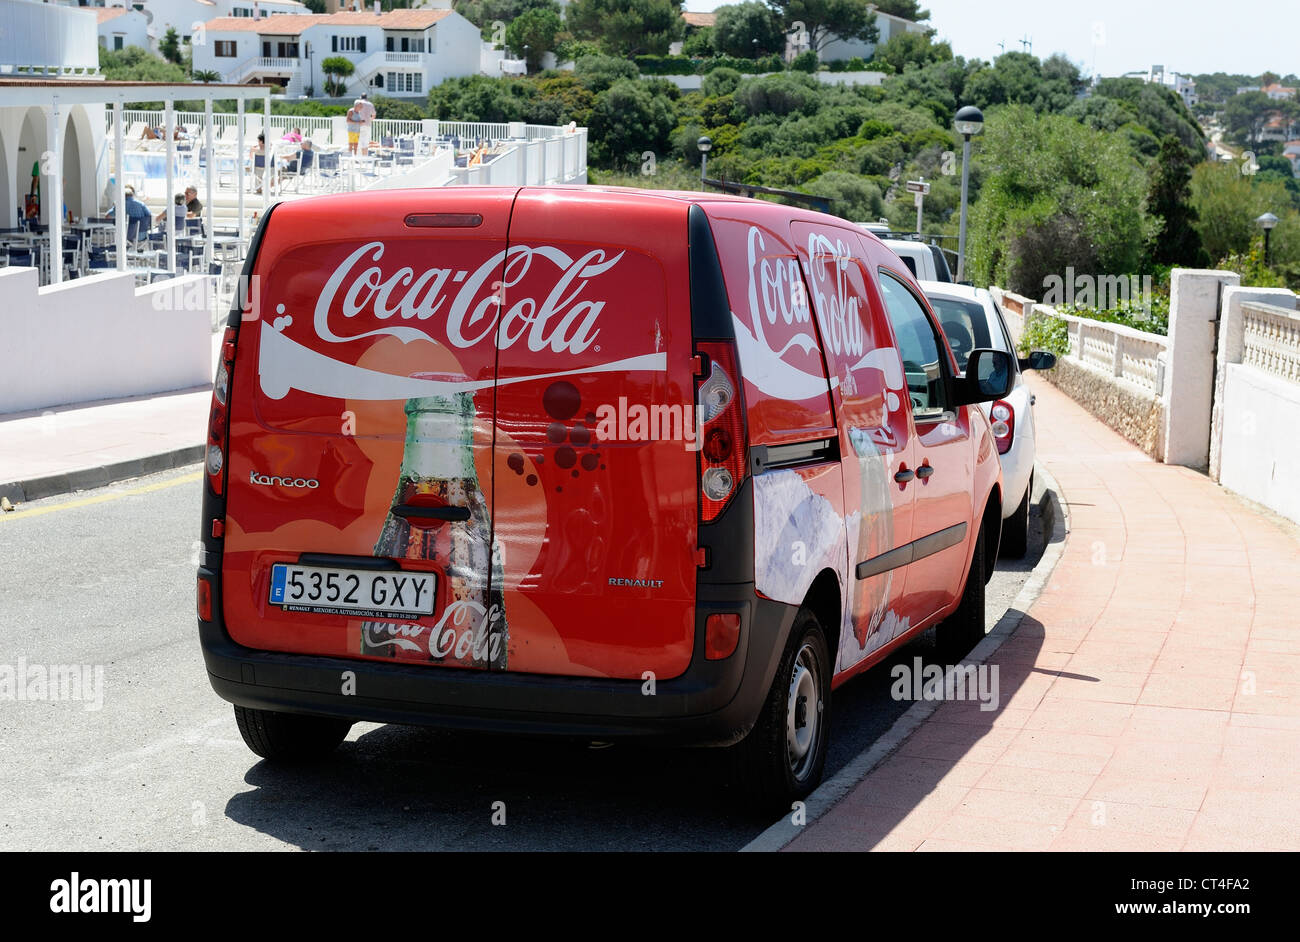 coca cola delivery van menorca spain Stock Photo